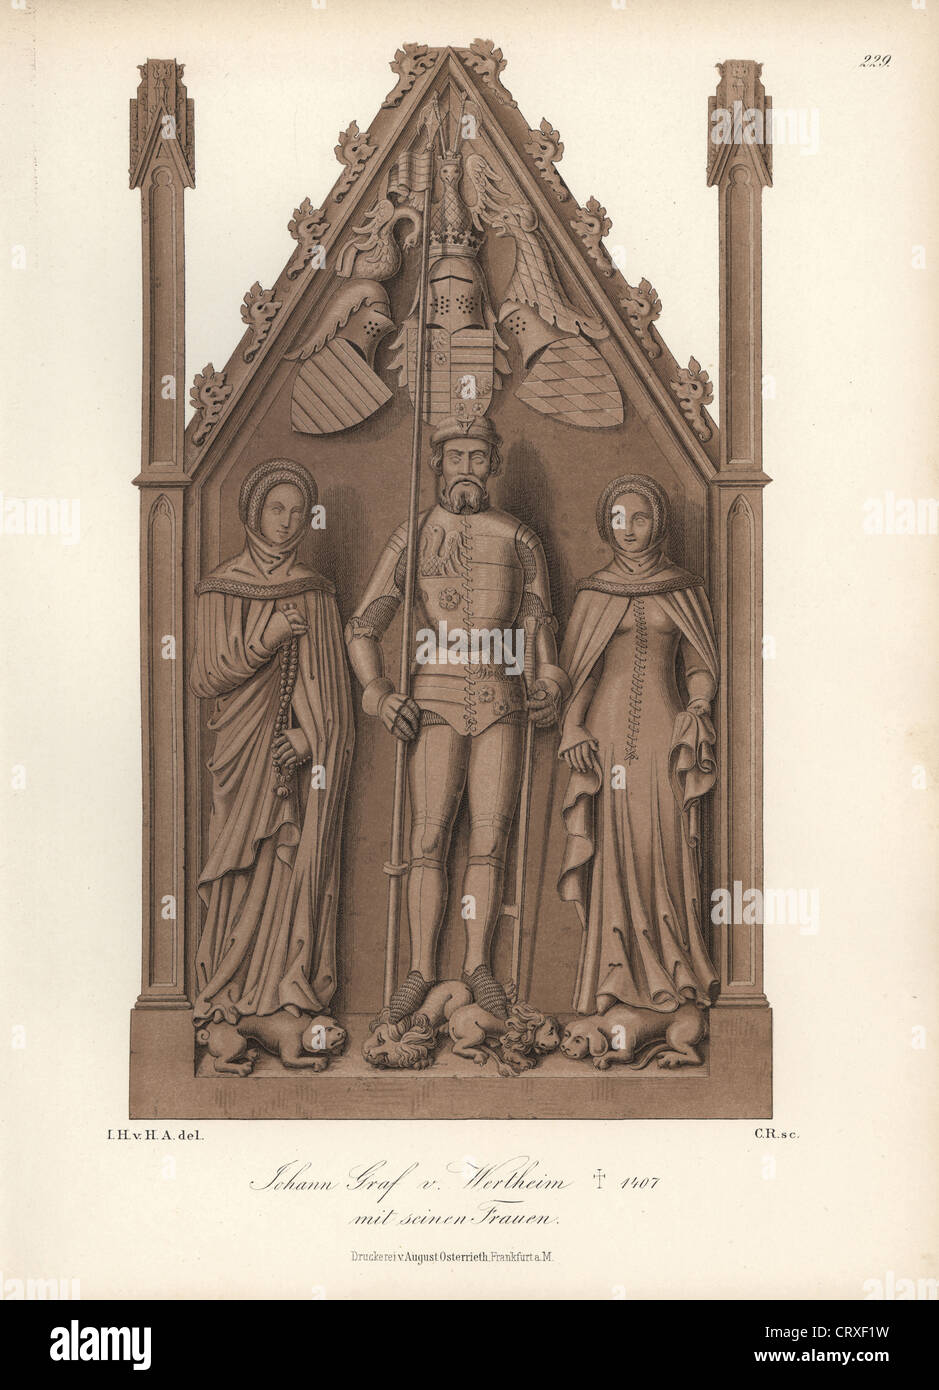 Johann Graf Wertheim, Ritter in Rüstung mit seinen Frauen aus dem 14. Jahrhundert. Stockfoto